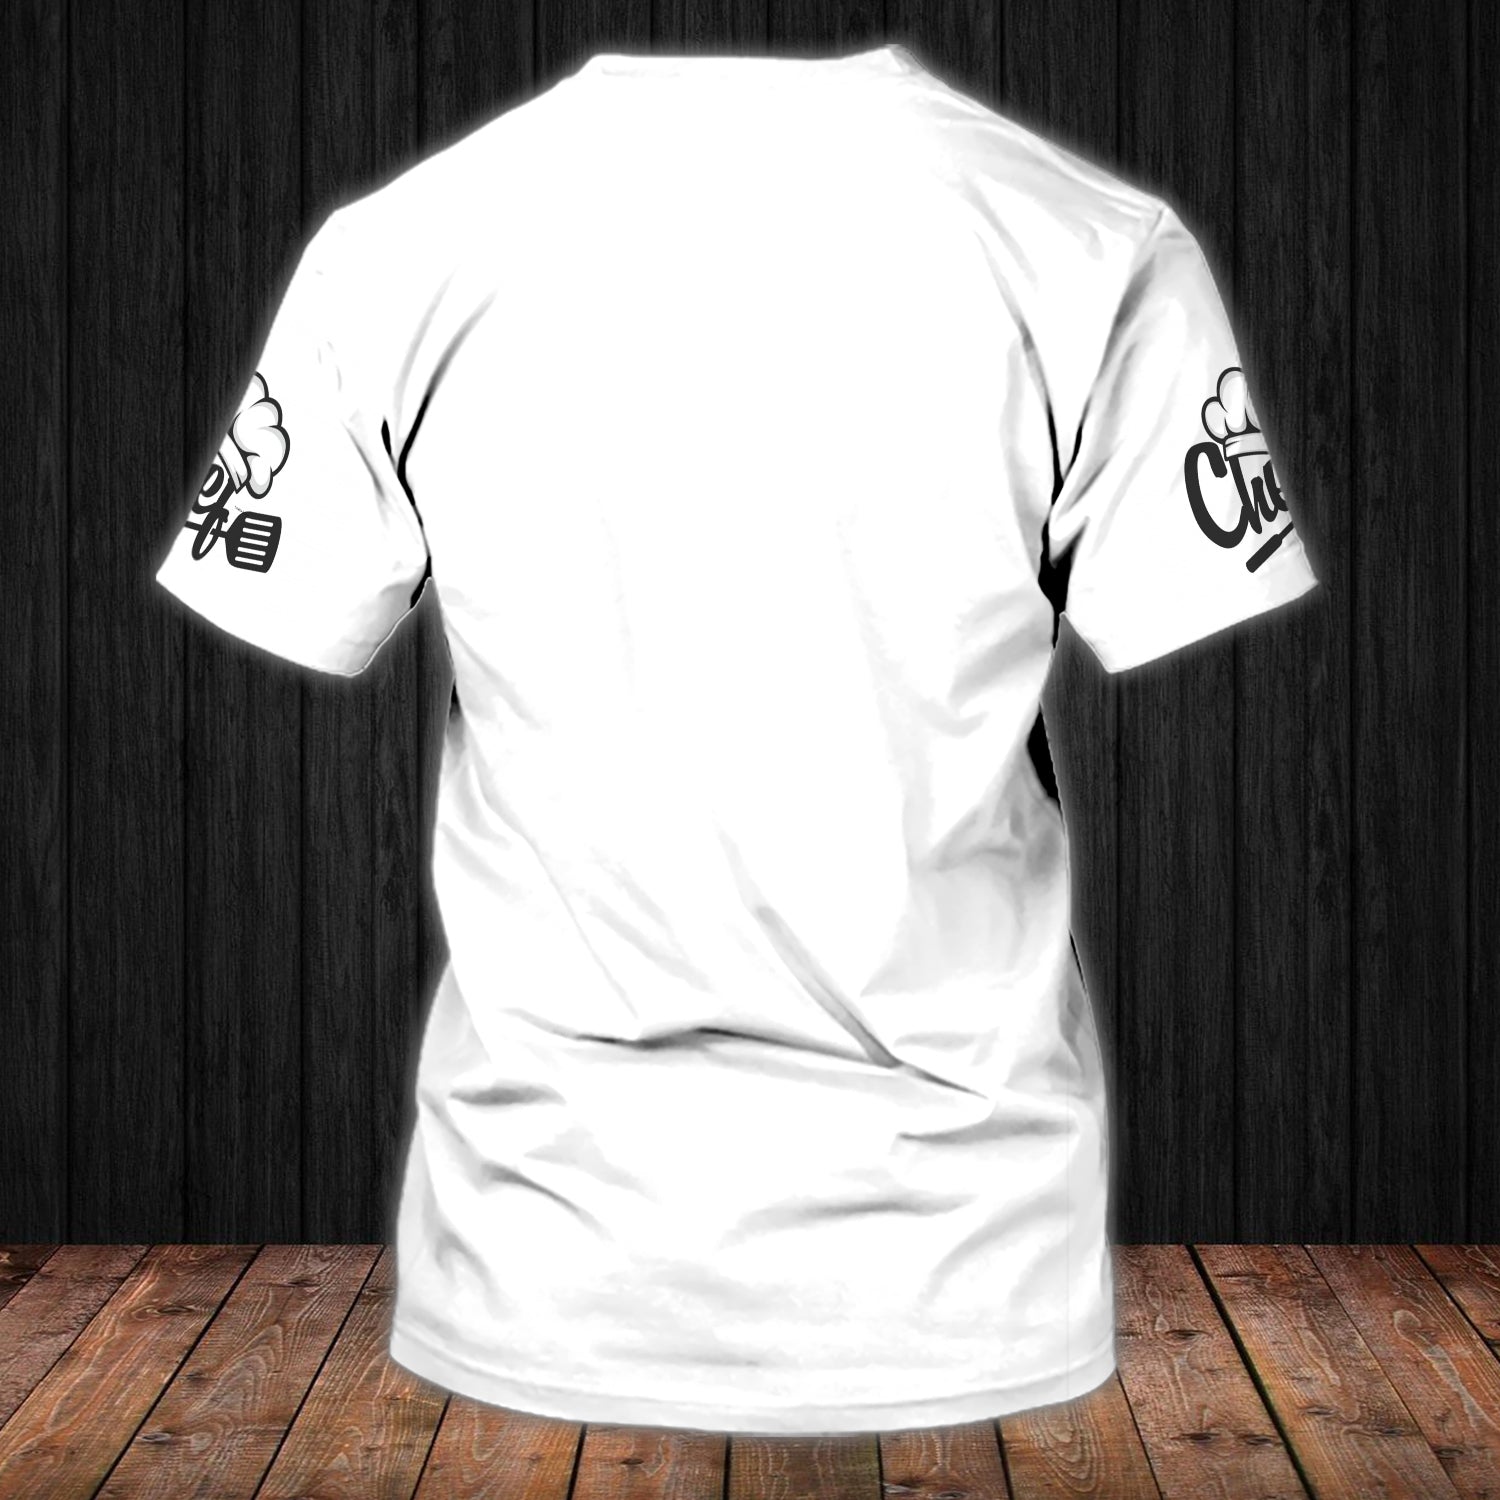 CHEF - Personalized Name 3D Tshirt 01 - RINC98 - HKM